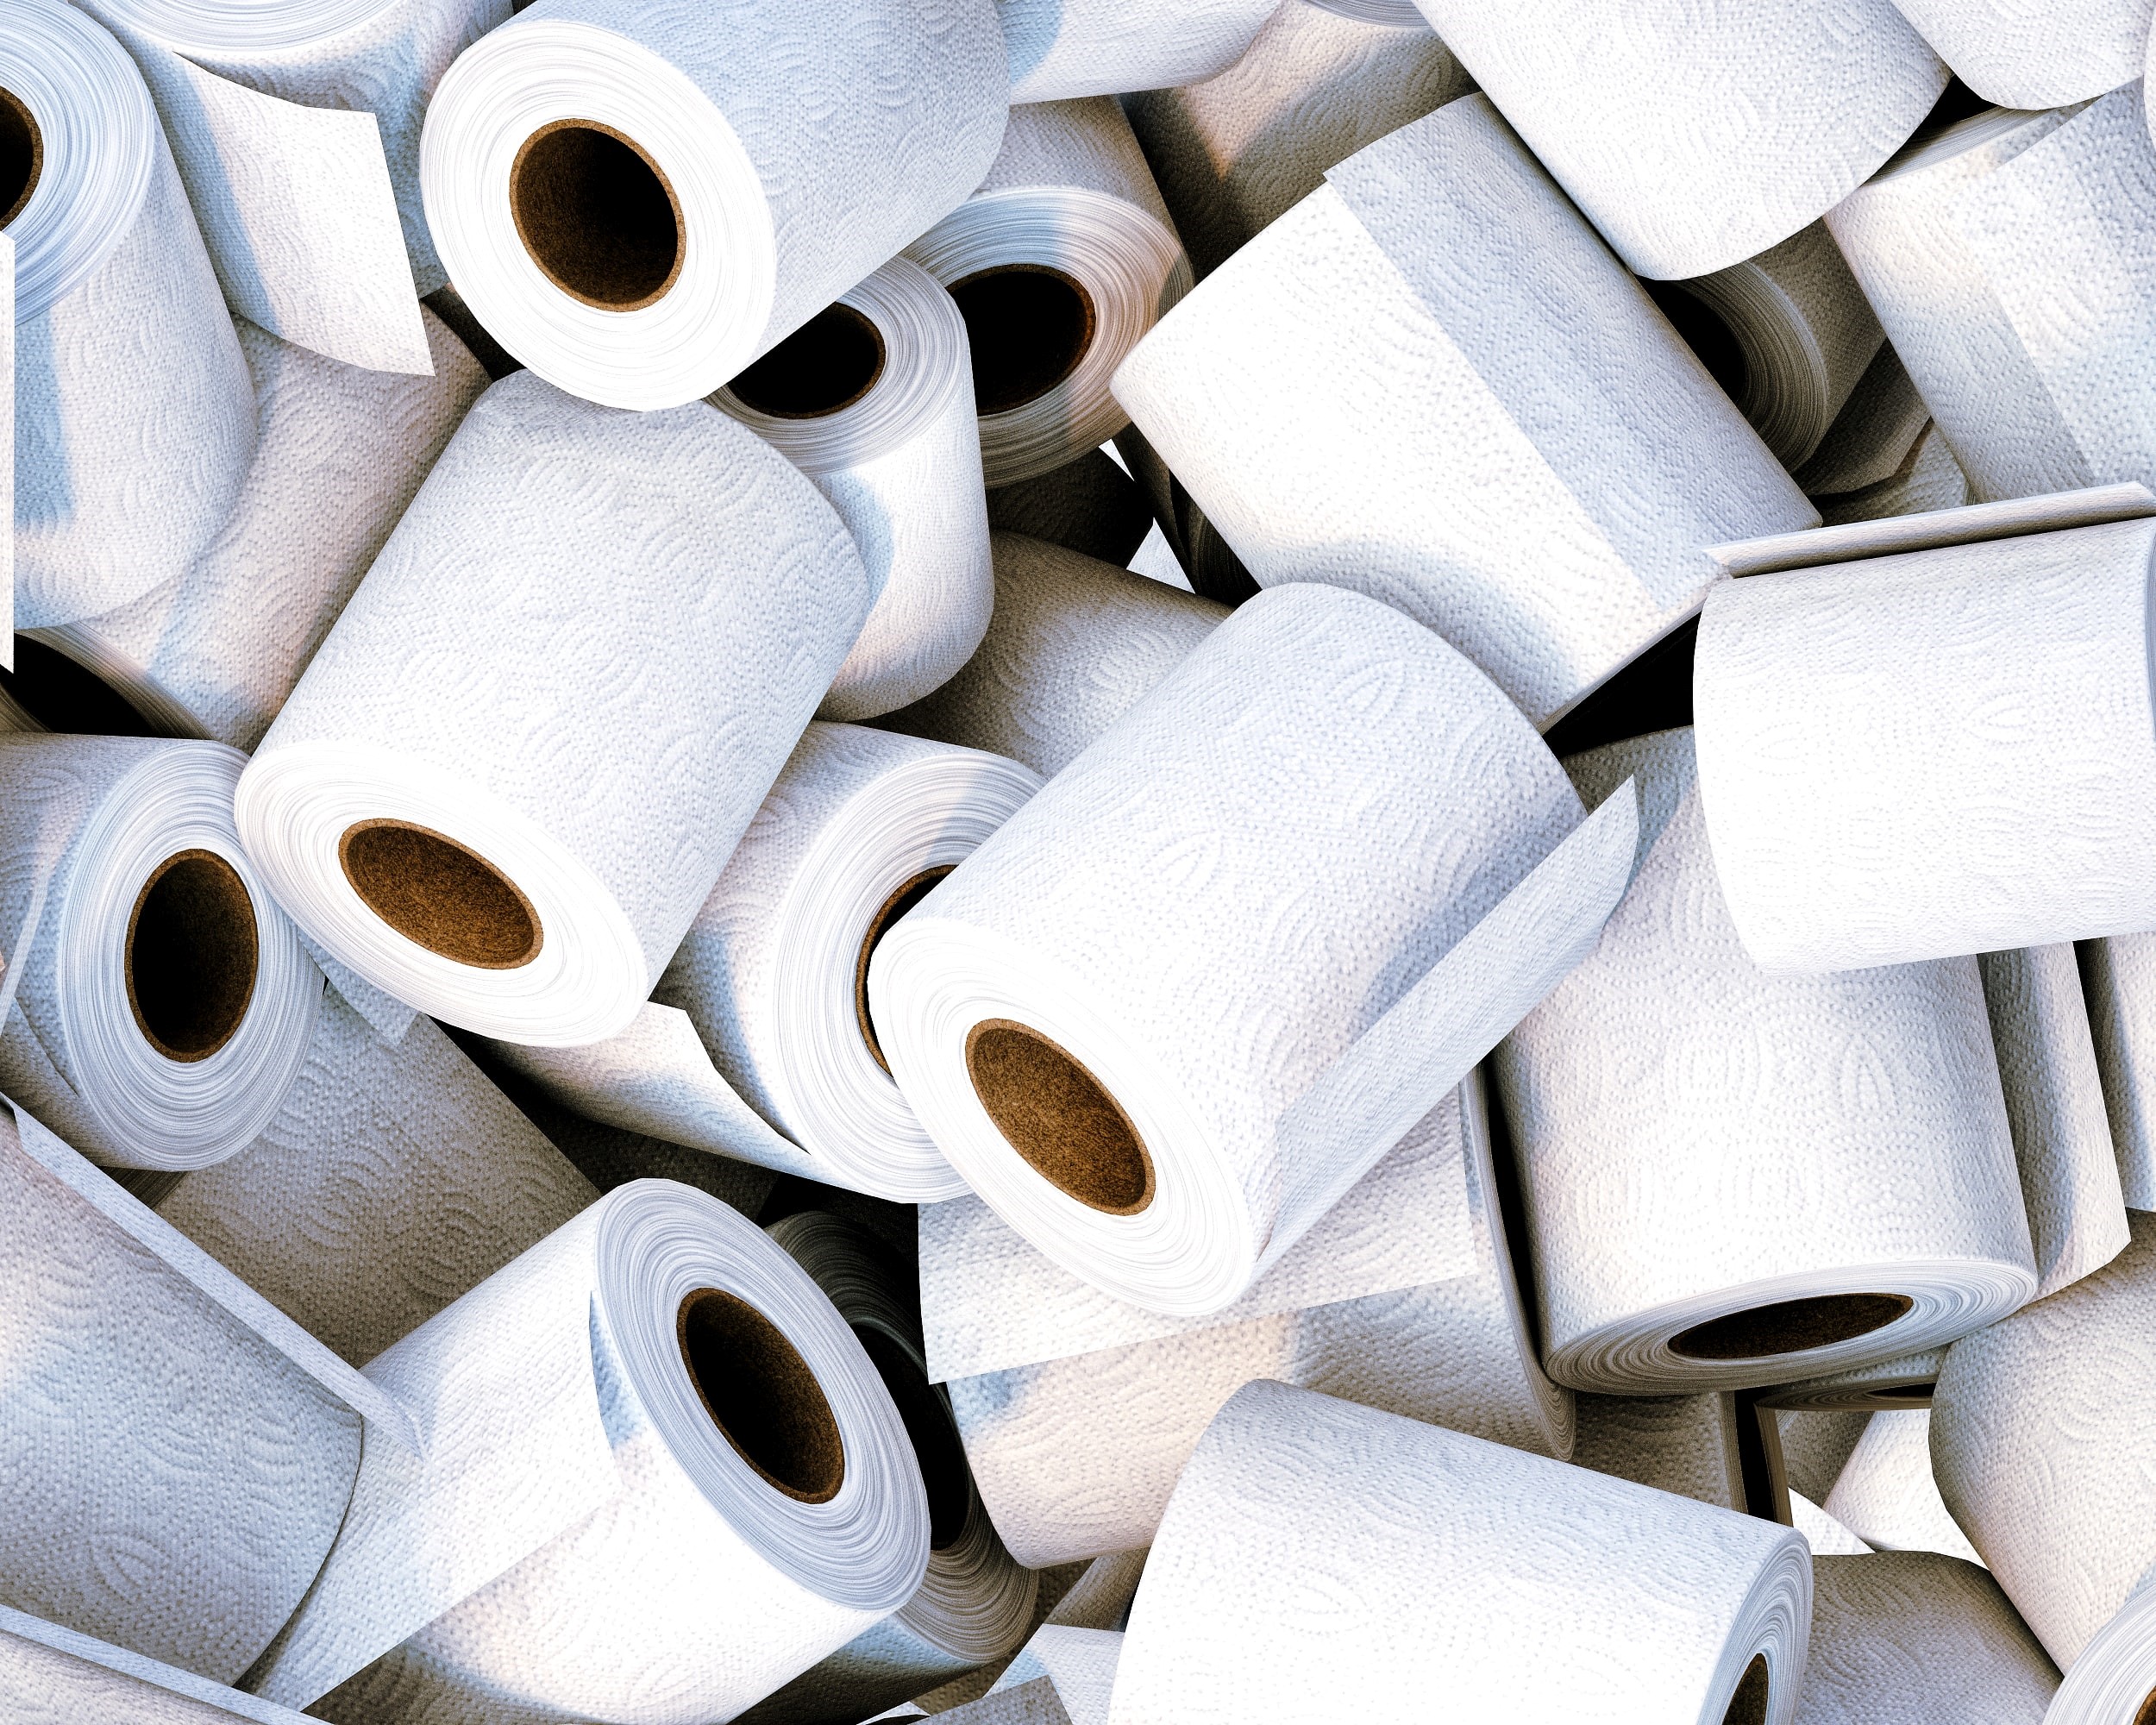 Papier toilette, essuie-tout, mouchoirs : les prix vont-ils «  considérablement augmenter » ? - Paris-Normandie